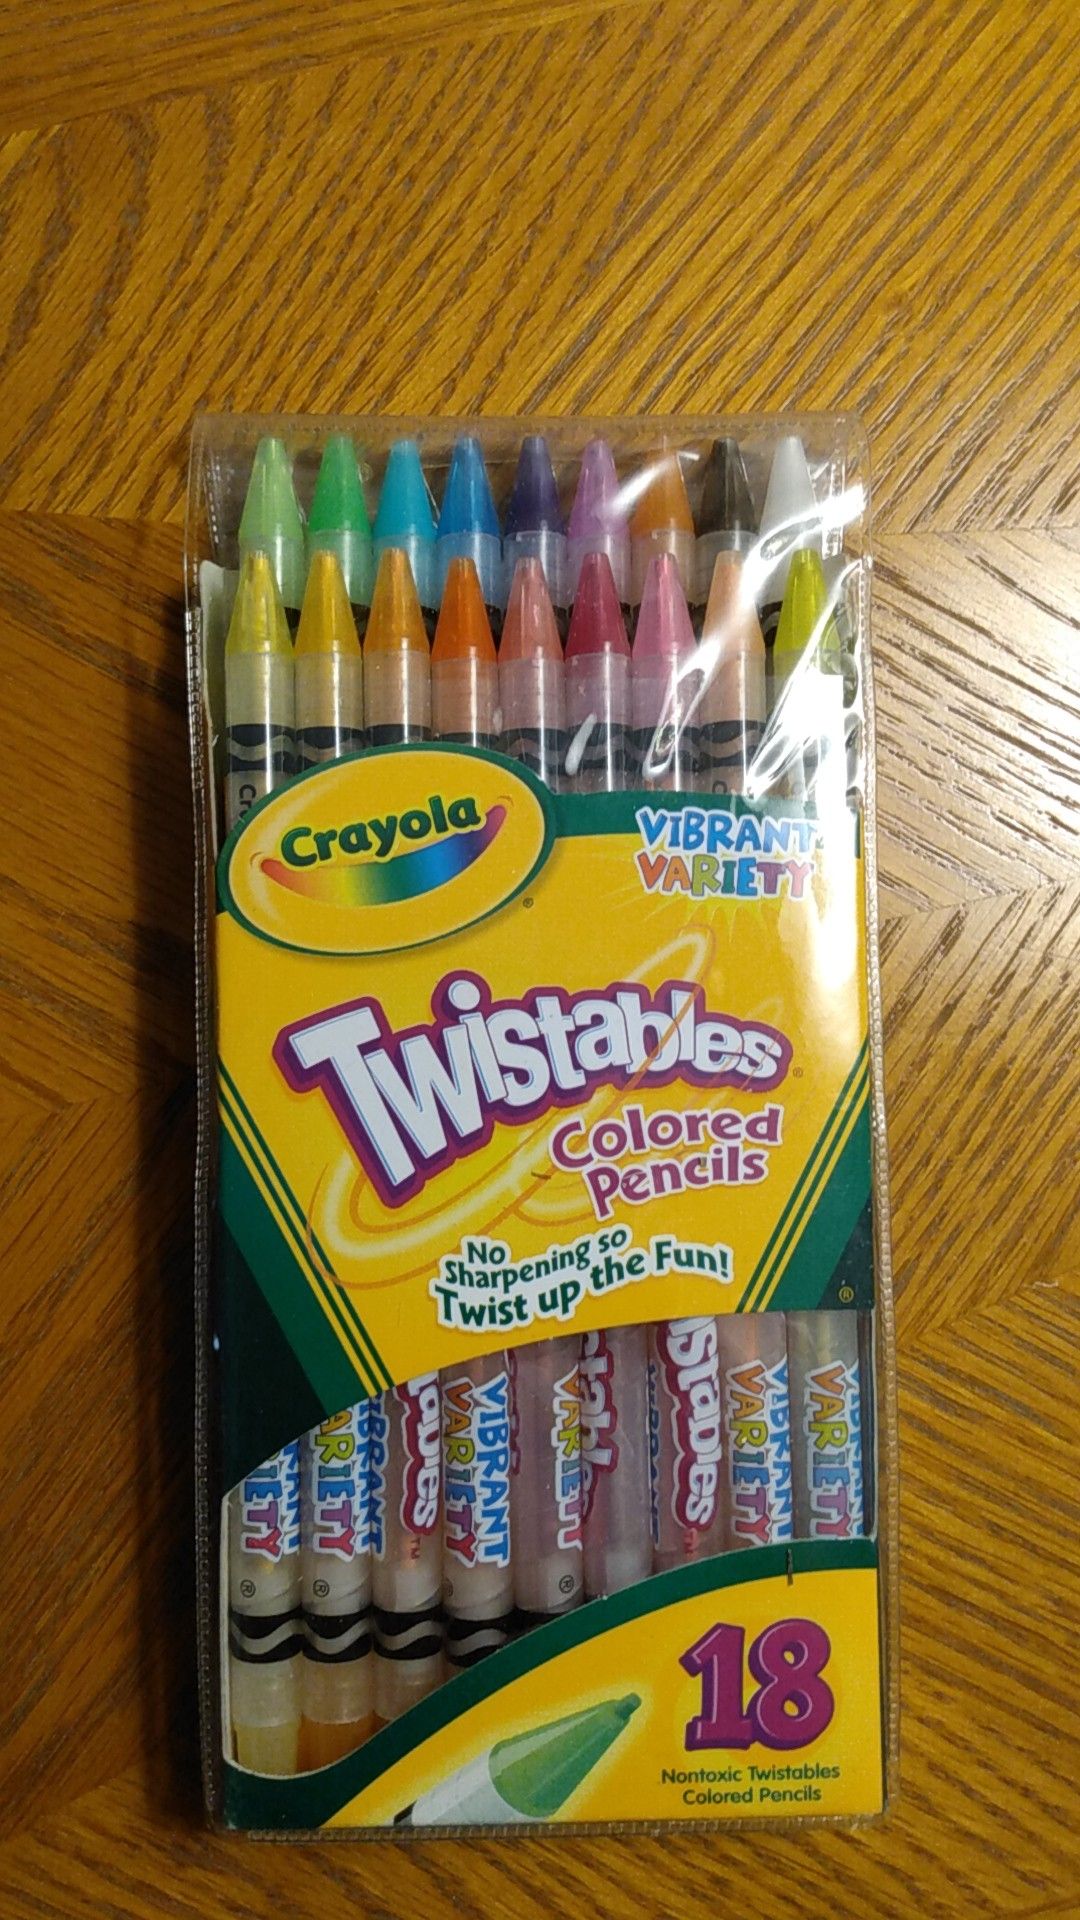 Crayola twistable colored pencils